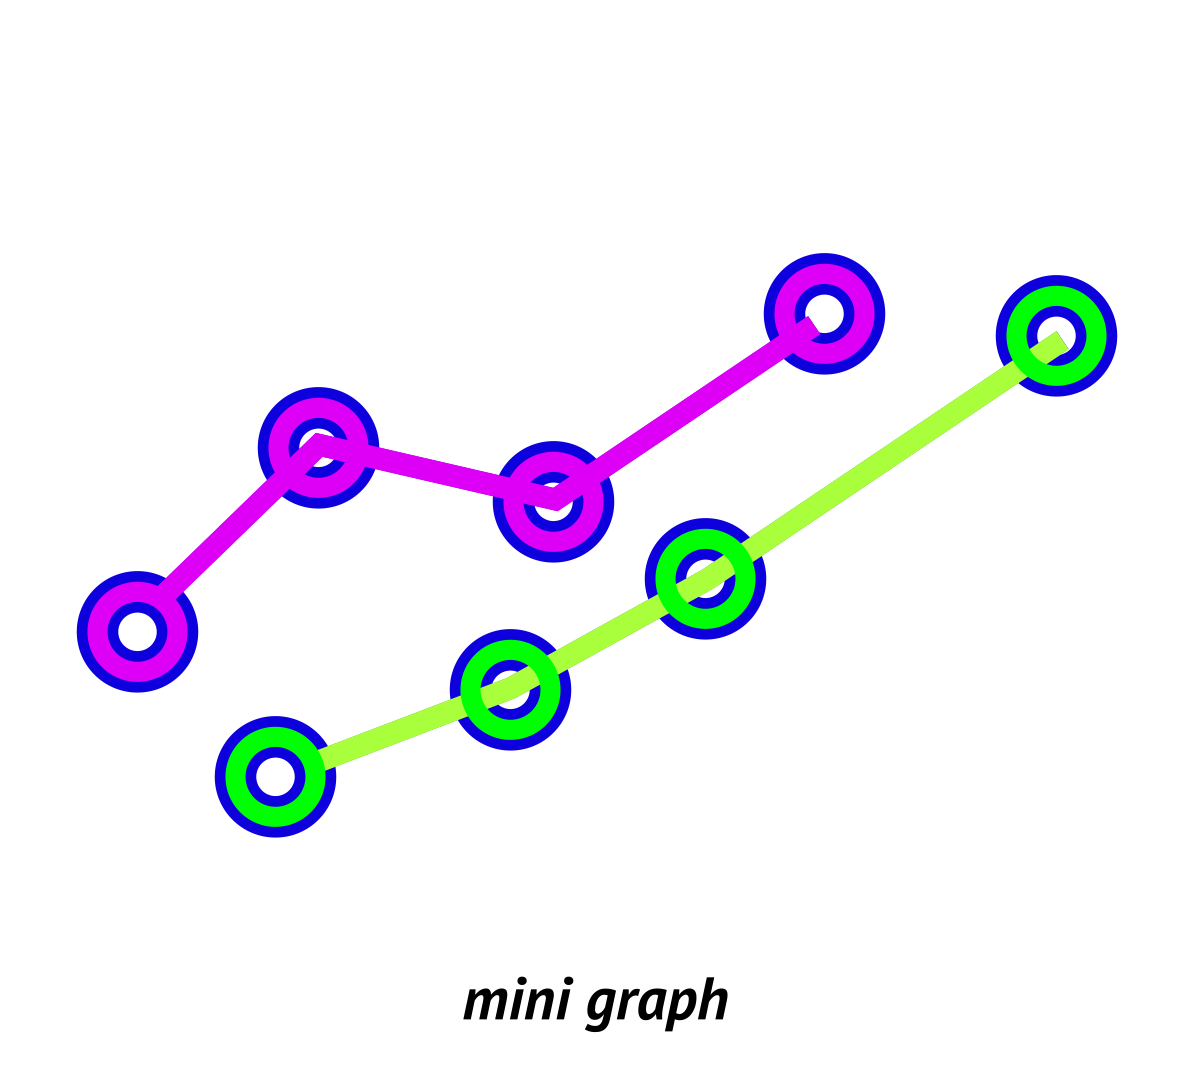 Mini line graph